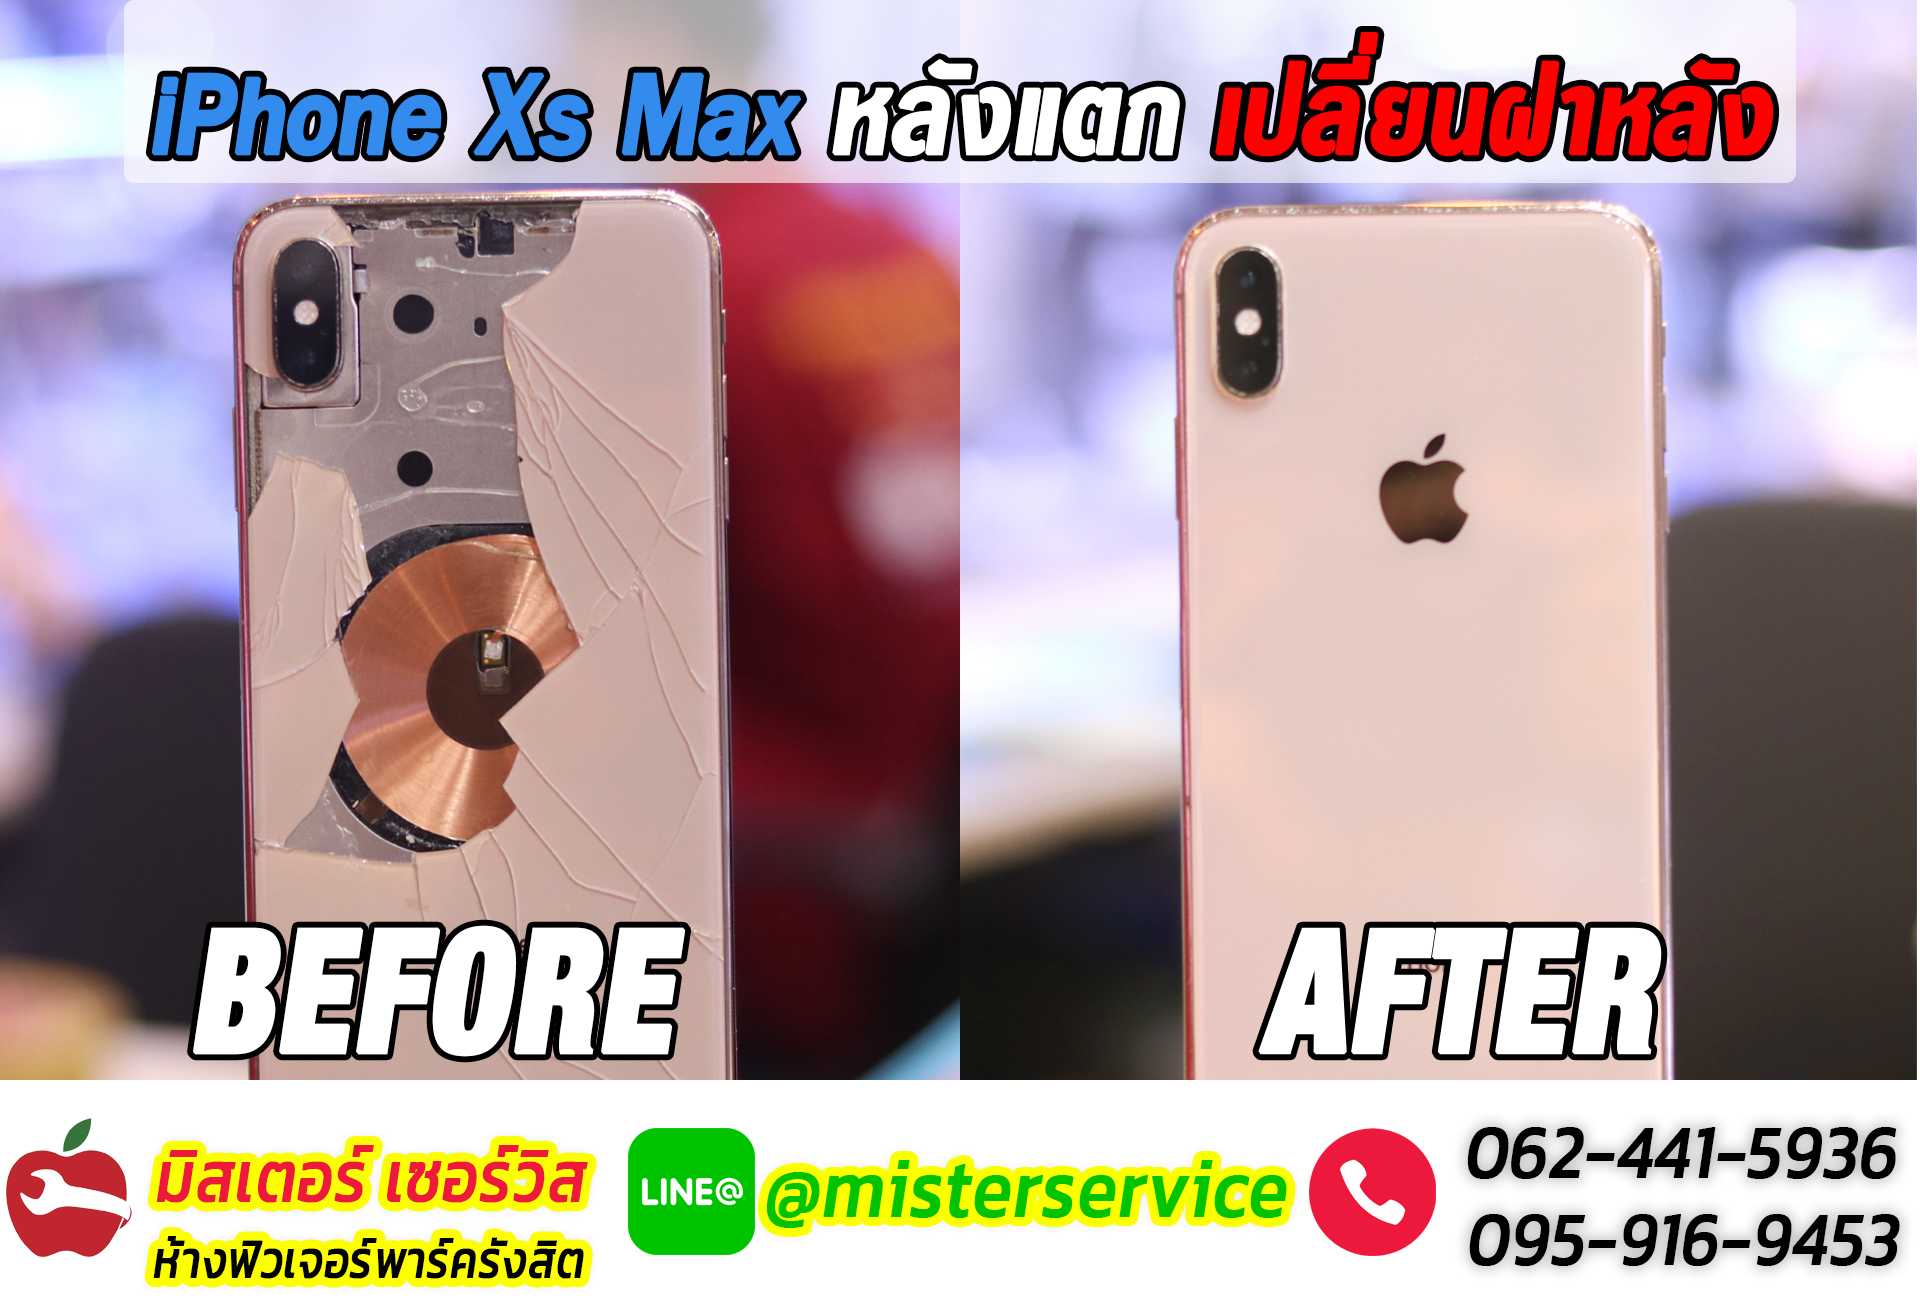 ซ่อม iphone พิจิตร